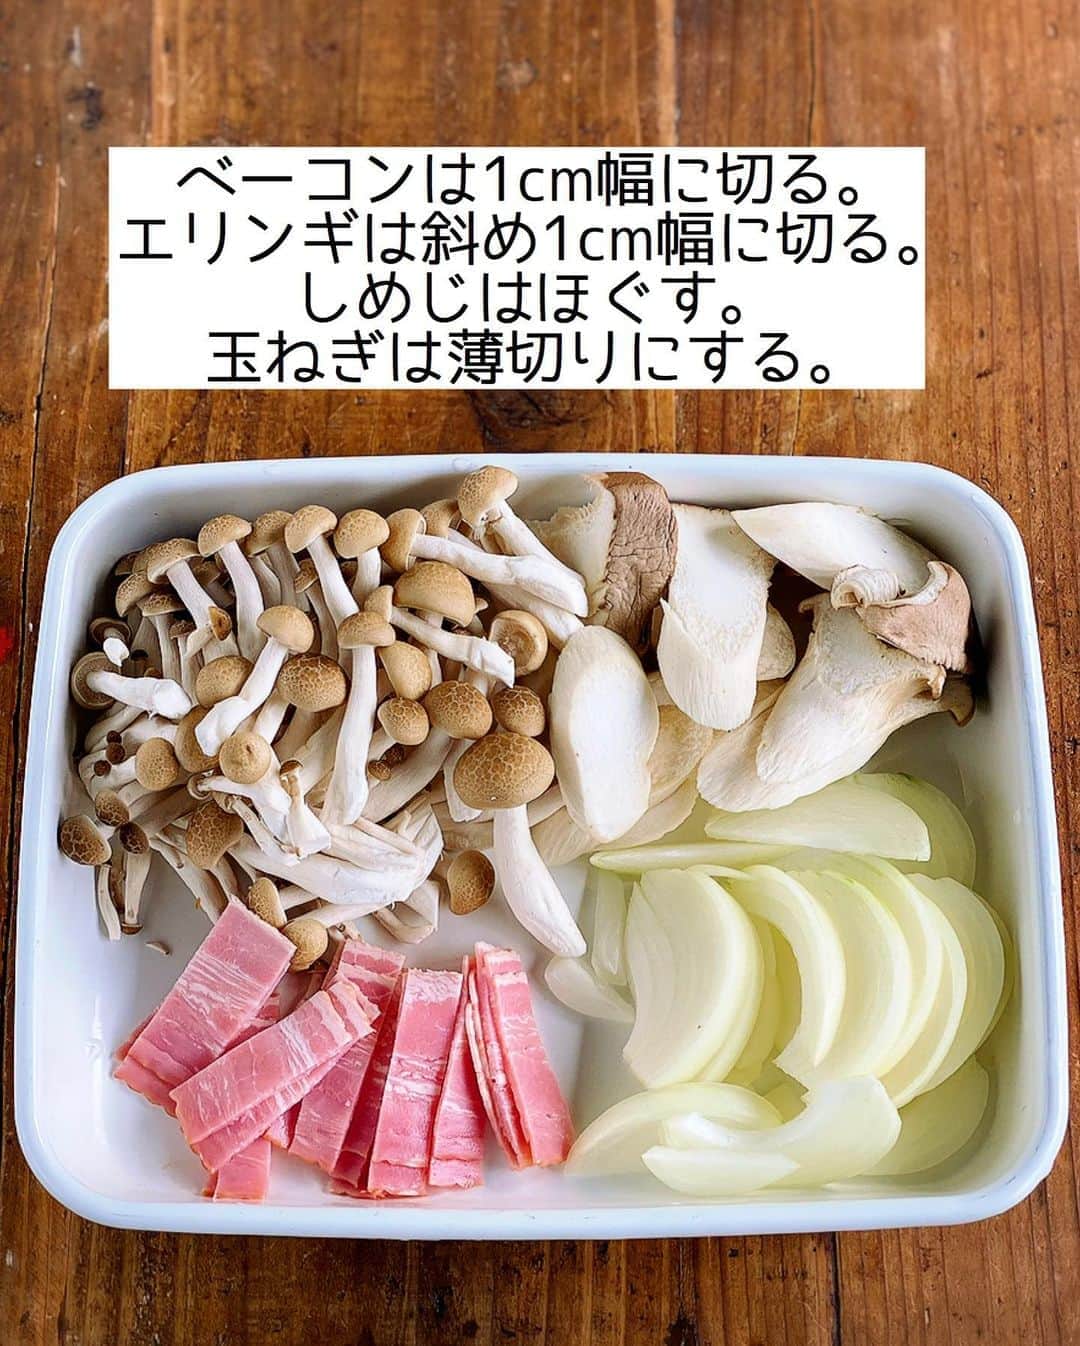 Mizuki【料理ブロガー・簡単レシピ】さんのインスタグラム写真 - (Mizuki【料理ブロガー・簡単レシピ】Instagram)「・﻿ 【#レシピ 】ーーーーーーーーーーー﻿ ♡ベーコンときのこのチーズ焼き♡﻿ ーーーーーーーーーーーーーーーーー﻿ ﻿ ﻿ ﻿ おはようございます(*^^*)﻿ ﻿ 今日ご紹介させていただくのは﻿ ベーコンときのこのチーズ焼き♩﻿ うま味たっぷりの素材に﻿ とろ〜りチーズが相性抜群(*´艸`)﻿ しかもとっても簡単なのに﻿ 小洒落て見える嬉しいおかずです♡﻿ (秋にぴったり🥺🍁)﻿ ﻿ さっと炒めてトースターで焼くだけなので﻿ お気軽にお試し下さいね(*^^*)﻿ ﻿ ﻿ ﻿ ＿＿＿＿＿＿＿＿＿＿＿＿＿＿＿＿＿＿＿＿﻿ 【2人分】﻿ ベーコン...2枚﻿ エリンギ...2本﻿ しめじ...1袋﻿ 玉ねぎ...1/2個﻿ オリーブオイル...大1﻿ ●バター5g﻿ ●醤油...小1﻿ ●塩こしょう...少々﻿ ピザ用チーズ...60g﻿ (あれば)パセリ...適量﻿ ﻿ 1.ベーコンは1cm幅に切る。エリンギは斜め1cm幅に切る。しめじはほぐす。玉ねぎは薄切りにする。﻿ 2.フライパンにオリーブオイルを中火で熱し、ベーコンと玉ねぎを炒める。玉ねぎがしんなりしたらきのこも加えて更に炒め、●を加えて煮からめる。﻿ 3.耐熱皿に2を入れてチーズをのせ、トースターでチーズに焼き色が付くまで焼く。仕上げにパセリを振る。﻿ ￣￣￣￣￣￣￣￣￣￣￣￣￣￣￣￣￣￣￣￣﻿ ﻿ ﻿ ﻿ 《ポイント》﻿ ♦︎きのこを加えたら炒め過ぎず、まだ少しかたいくらいで調味料をからめて下さい♩﻿ ﻿ ﻿ ﻿ ﻿ ﻿ ﻿ ﻿ ﻿ ⭐️発売中⭐️3刷重版が決まりました😭﻿ 本当にありがとうございます(涙)﻿ _____________________________________﻿ \15分でいただきます/﻿ 📕#Mizukiの2品献立 📕﻿ (9月24日発売・マガジンハウス)﻿ ￣￣￣￣￣￣￣￣￣￣￣￣￣￣￣￣￣﻿ ﻿ 忙しい私たちには﻿ 2品くらいがちょうどいい！﻿ 『しんどくない献立、考えました』﻿ ￣￣￣￣￣￣￣￣￣￣￣￣￣￣￣￣﻿ ﻿ ーーーーーPART.1 ーーーーー﻿ 【Mizukiのお墨つき！２品献立ベスト10】﻿ 約15分でできる10献立をご紹介！﻿ メインは全部フライパン、副菜はレンチンor混ぜるだけ♡﻿ ﻿ ーーーーーPART.2 ーーーーー﻿ 【フライパンひとつ！今夜のメインおかず】﻿ 献立の主役になる肉や魚のおかず50品！﻿ Part3の副菜と組み合わせれば﻿ 献立のバリエーションが広がりますよ♩﻿ ﻿ ーーーーー PART.3 ーーーーー﻿ 【合間に作れる！ 野菜別かんたん副菜】﻿ レンチンor和えるだけの副菜レシピを﻿ 素材別にたっぷり収録♩﻿ ﻿ ーーーーー番外編ーーーーー﻿ 【ひとつで満足！ご飯＆麺】﻿ 【具だくさん！おかずスープ】﻿ 【オーブンいらずのおやつレシピ】﻿ ￣￣￣￣￣￣￣￣￣￣￣￣￣￣￣￣￣￣﻿ (ハイライトにリンク🔗あります💗)﻿ ﻿ ﻿ ﻿ ﻿ ＿＿＿＿＿＿＿＿＿＿＿＿＿＿＿＿＿＿﻿ 🔔テレビ出演のお知らせ🔔﻿ 10月12日〜22日までの2週間(月〜木)﻿ 【NHK Eテレ まる得マガジン 】が﻿ 再放送されています☺️(昼11:55〜)﻿ 俳優の武田航平さん﻿ (@kouhei_takeda.official )と一緒に﻿ 絶品おやつから意外なランチまで﻿ たくさん作らせていただきますよ♩﻿ ﻿ ＊NHKテキスト発売中です📕﻿ ￣￣￣￣￣￣￣￣￣￣￣￣￣￣￣￣￣￣﻿ ﻿ ﻿ ﻿ ﻿ ﻿ レシピを作って下さった際や﻿ レシピ本についてのご投稿には﻿ タグ付け( @mizuki_31cafe )して﻿ お知らせいただけると嬉しいです😊💕﻿ ﻿ ﻿ ﻿ ﻿ ﻿ ﻿ #きのこ#チーズ焼き#トースター#秋レシピ#Mizuki#簡単レシピ#時短レシピ#節約レシピ#料理#フーディーテーブル#マカロニメイト#おうちごはん#デリスタグラマー#料理好きな人と繋がりたい#食べ物#料理記録#おうちごはんlover#写真好きな人と繋がりたい#foodpic#cooking#recipe#lin_stagrammer#foodporn#yummy#f52grams#ベーコンときのこのチーズ焼きm」10月22日 7時08分 - mizuki_31cafe